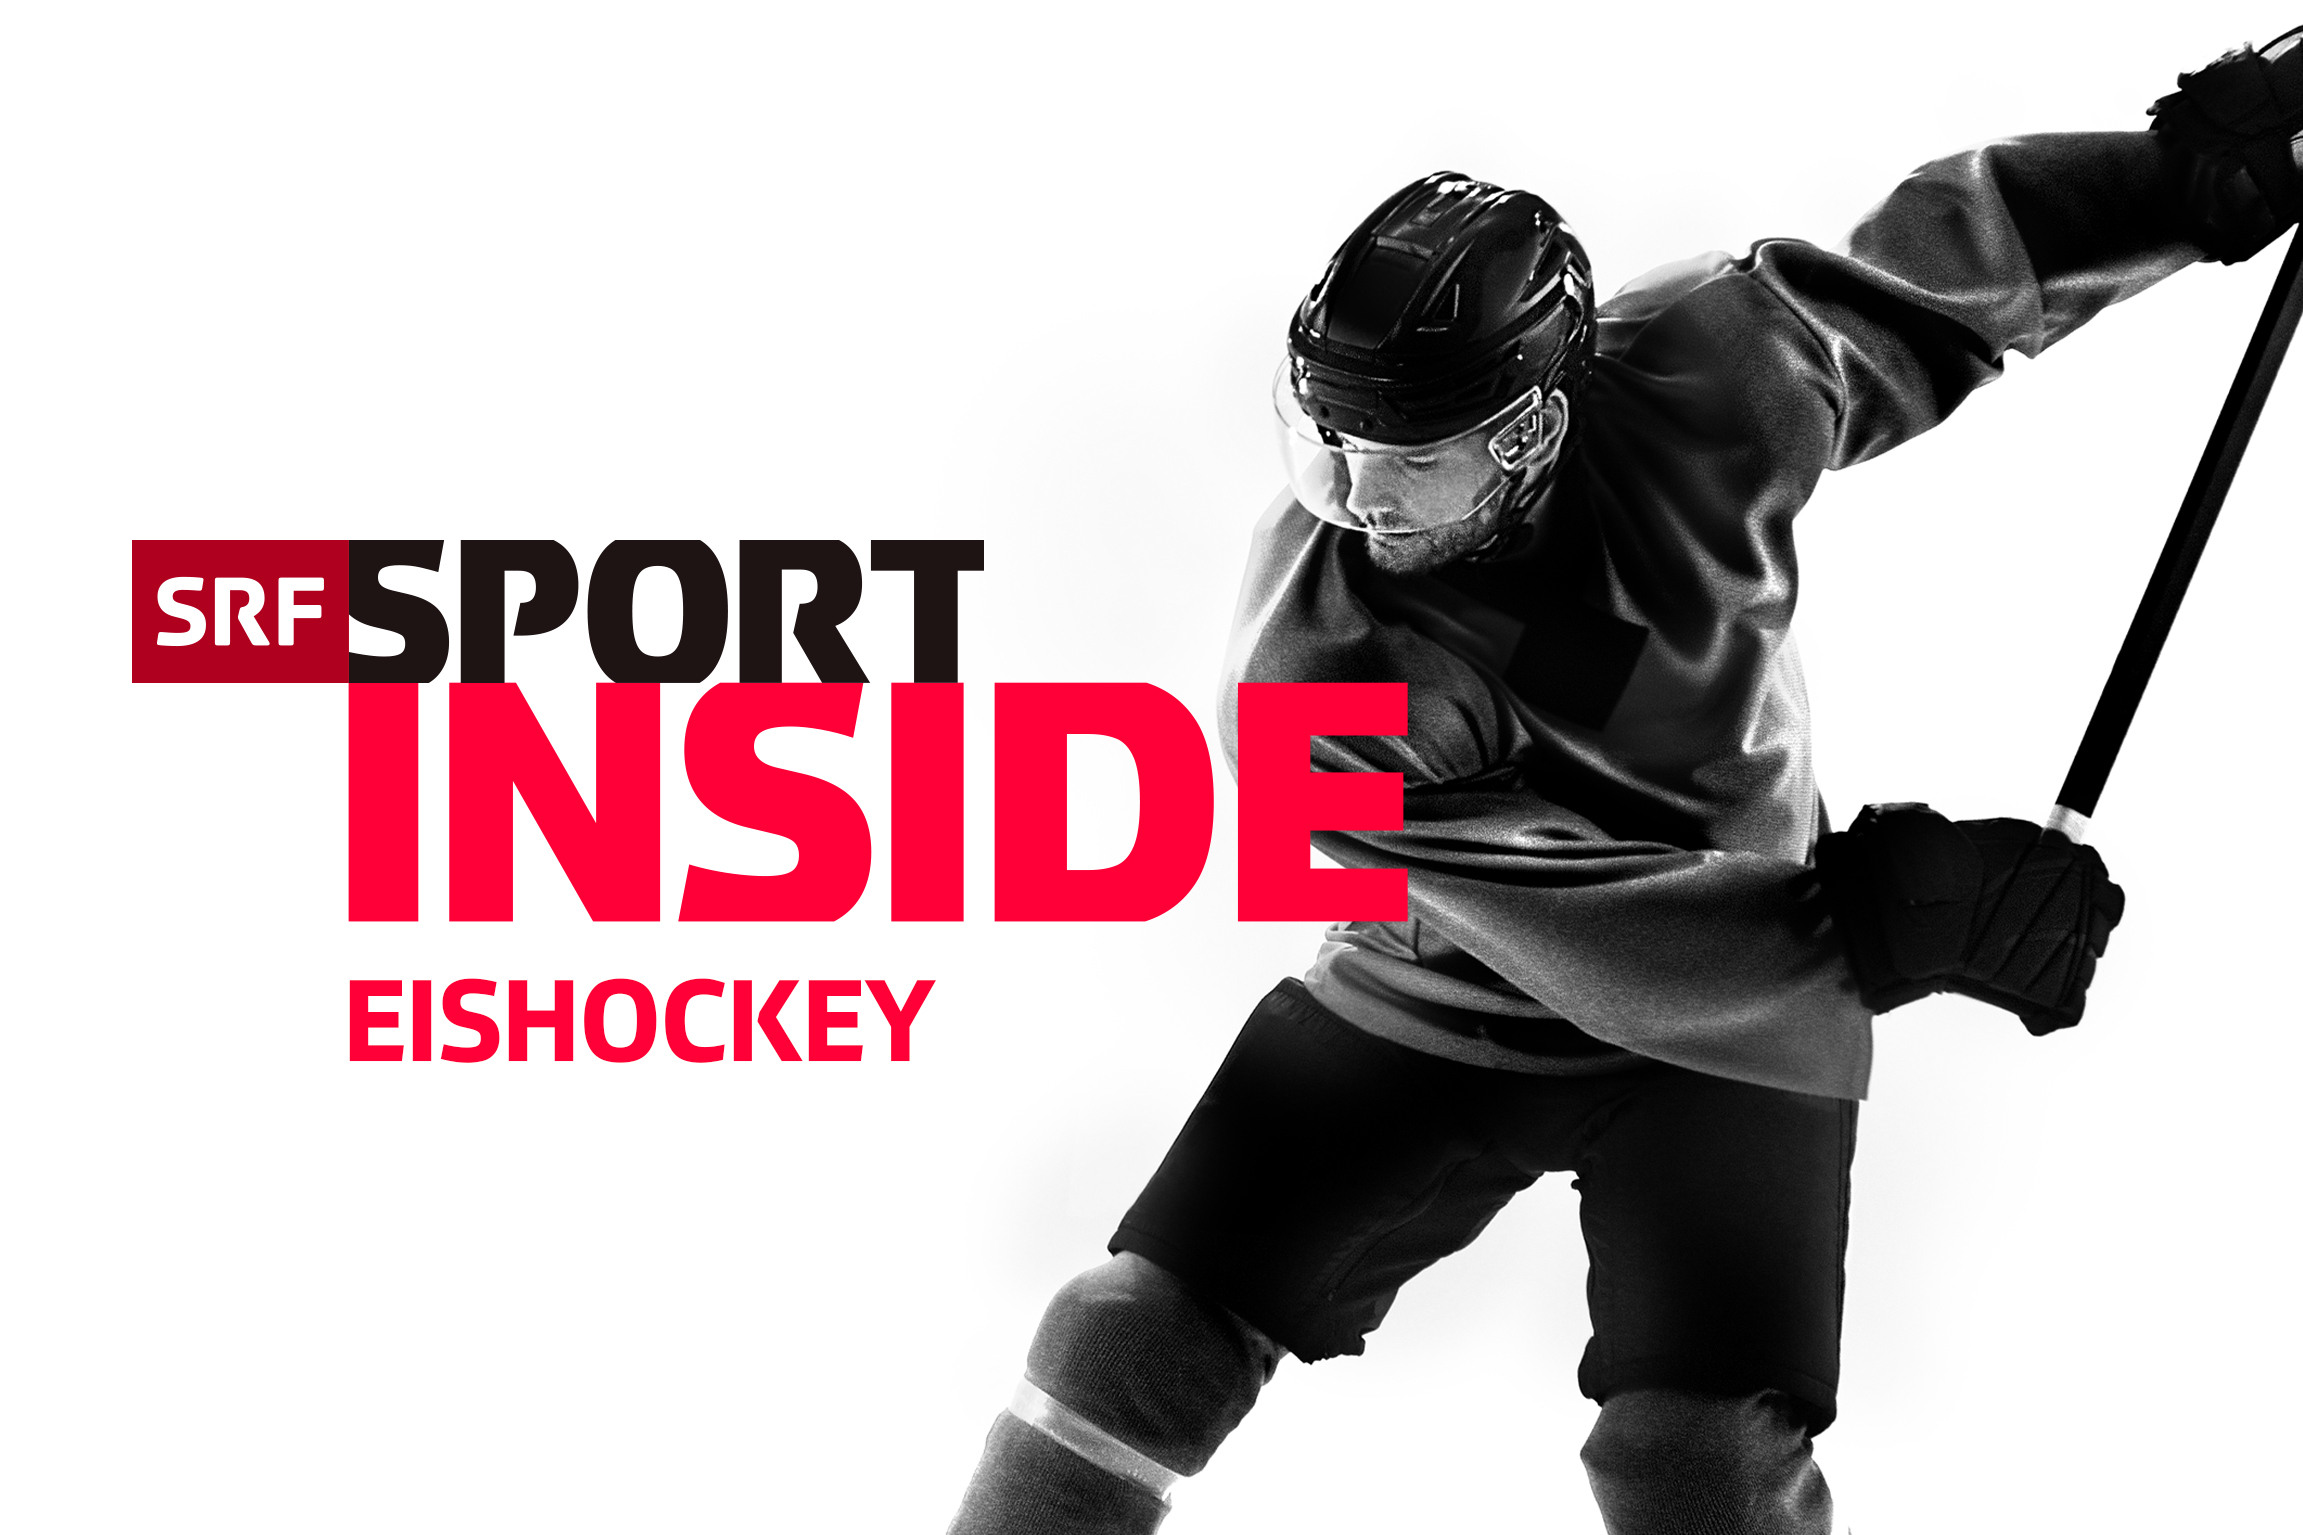 SRF Sport Eishockey – InsideKeyvisual